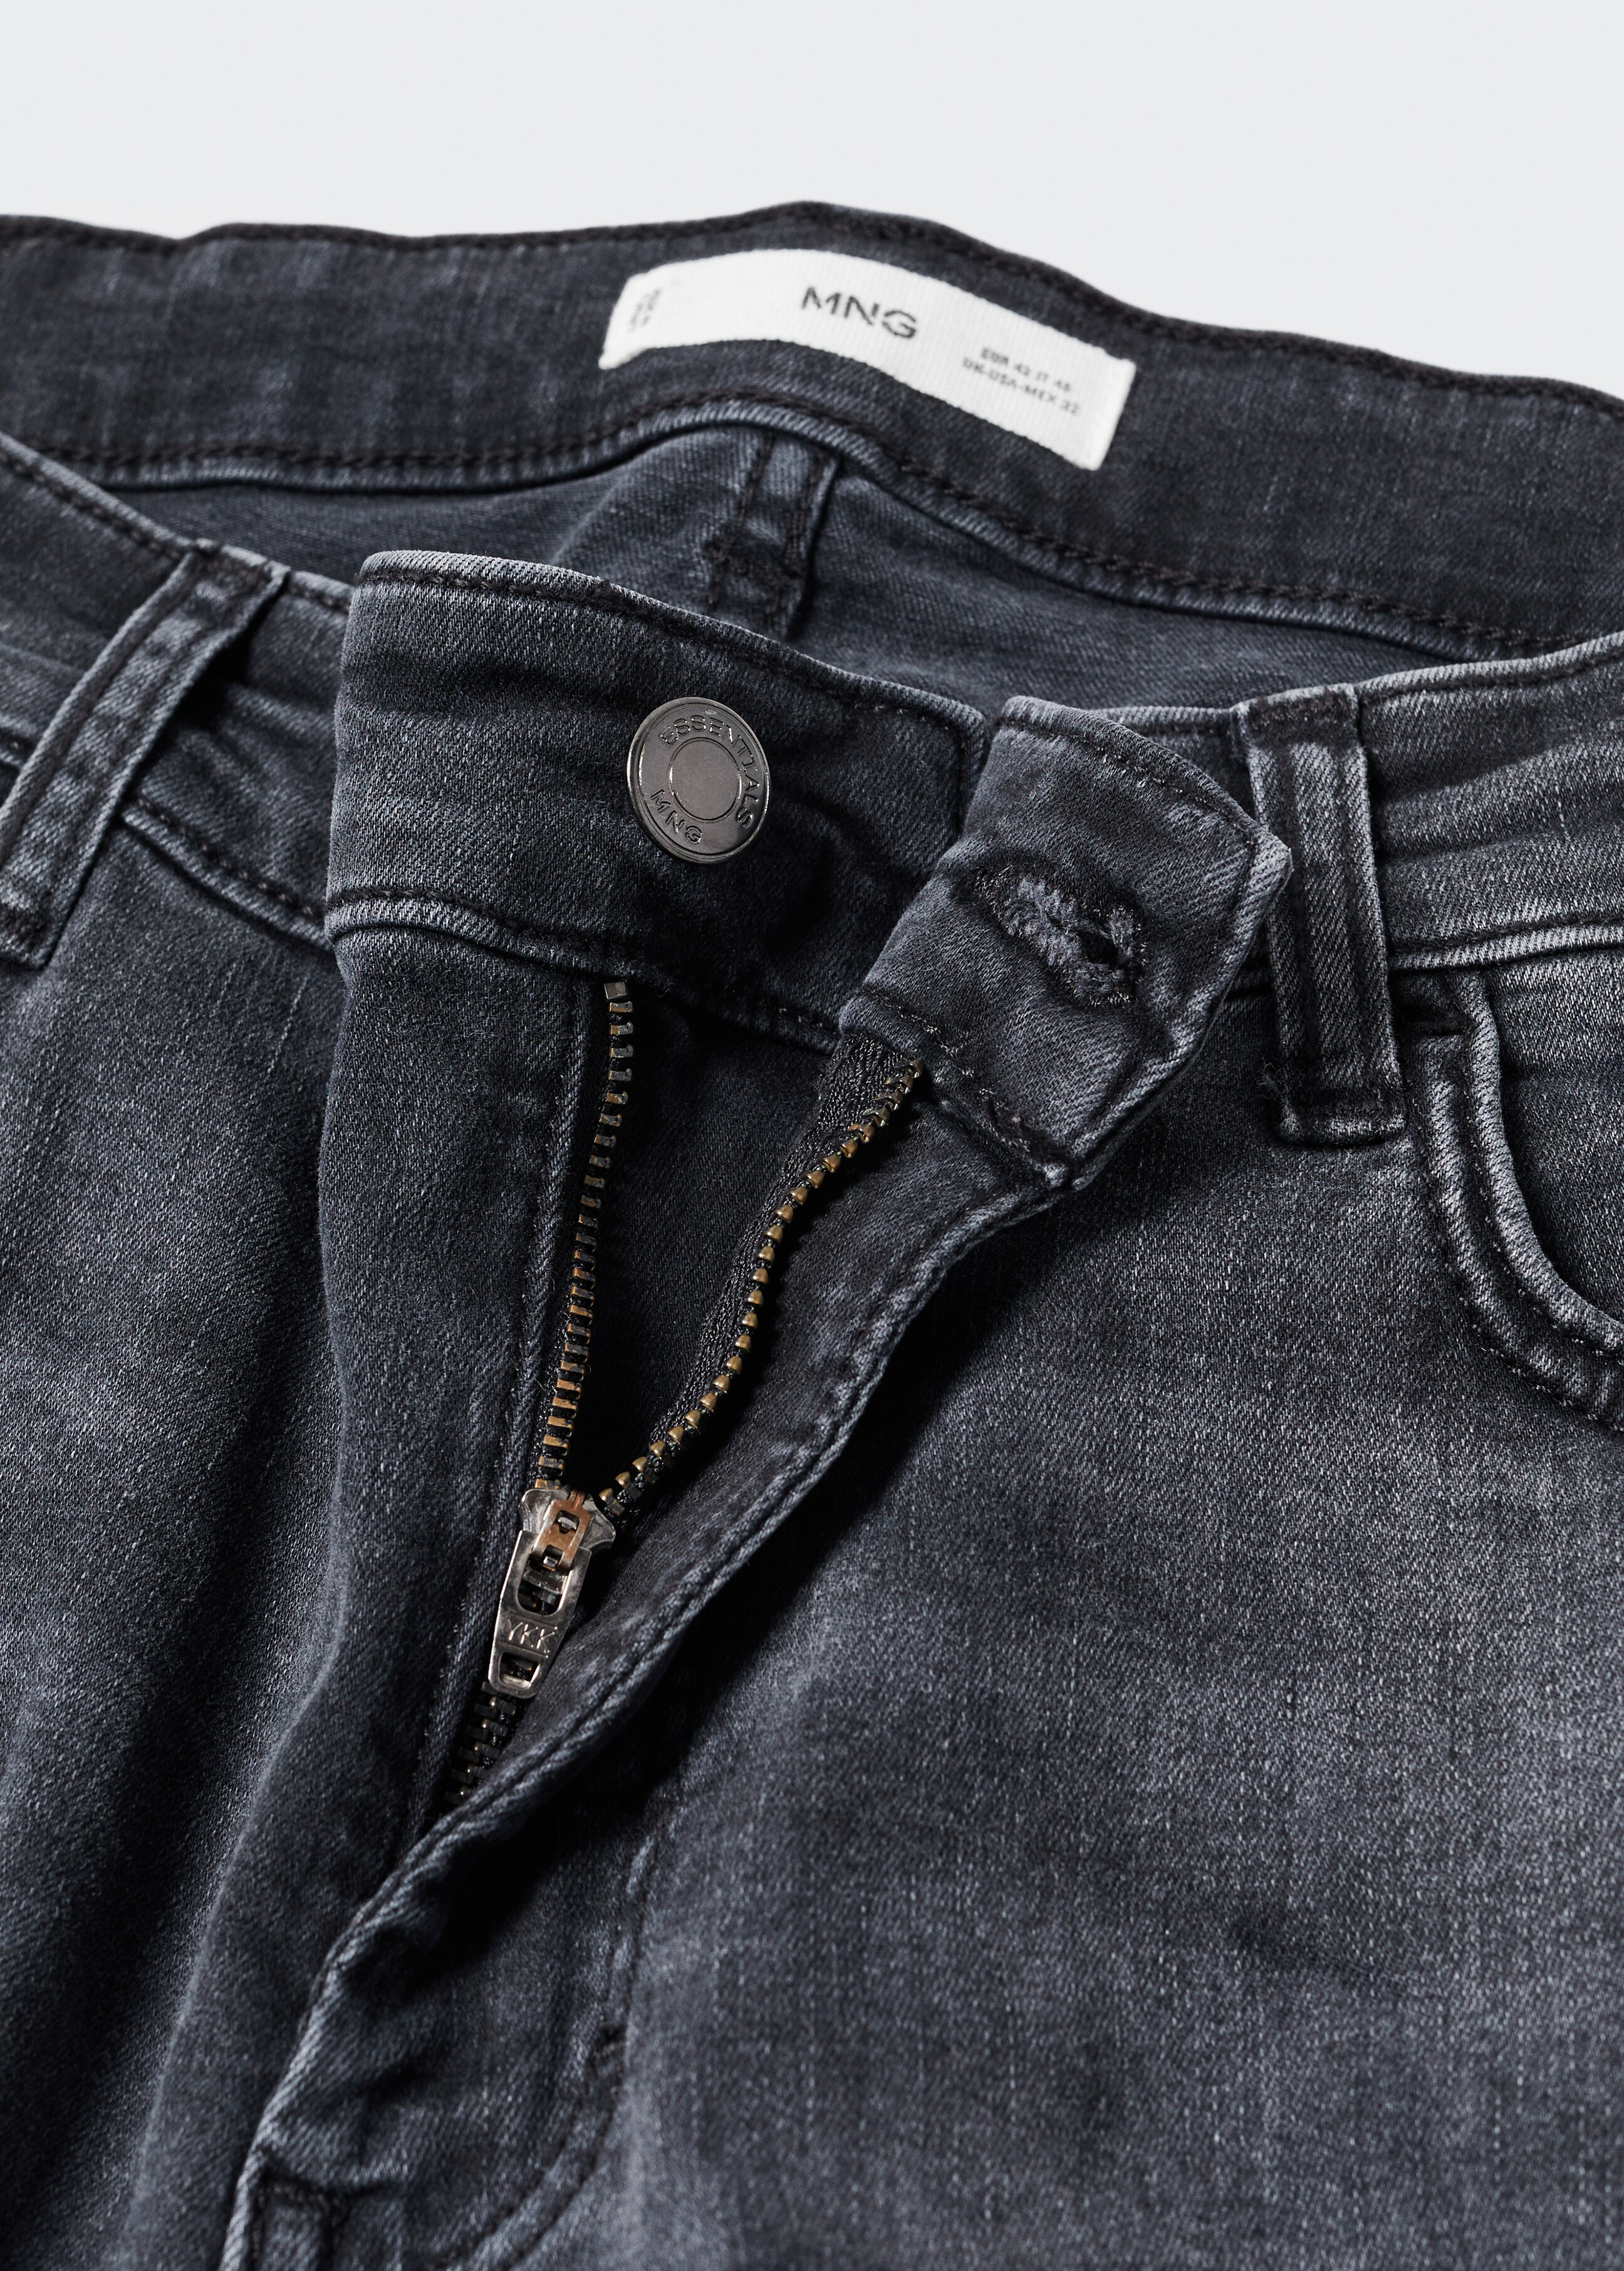 Jeans Patrick slim fit Ultra Soft Touch - Dettaglio dell'articolo 8